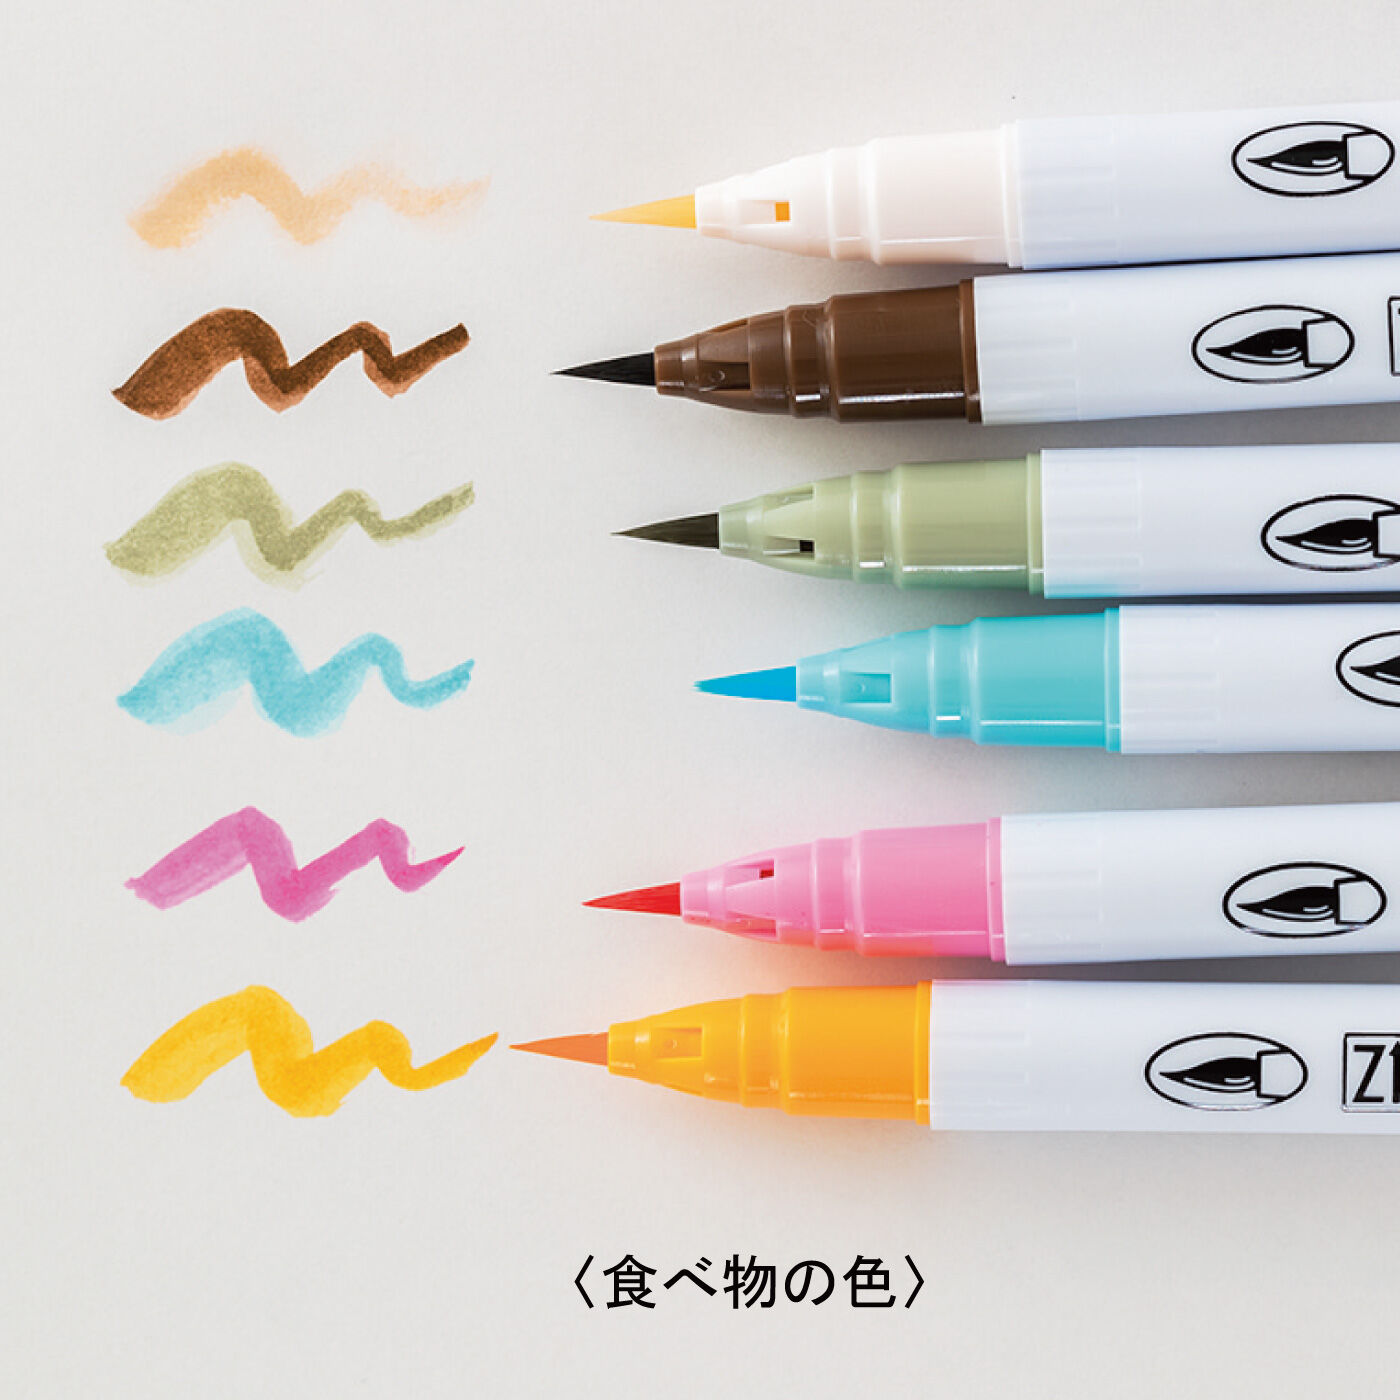 ミニツク|ゆる絵がもっと楽しくなる カラー筆ペン6本セットの会|食べものの色